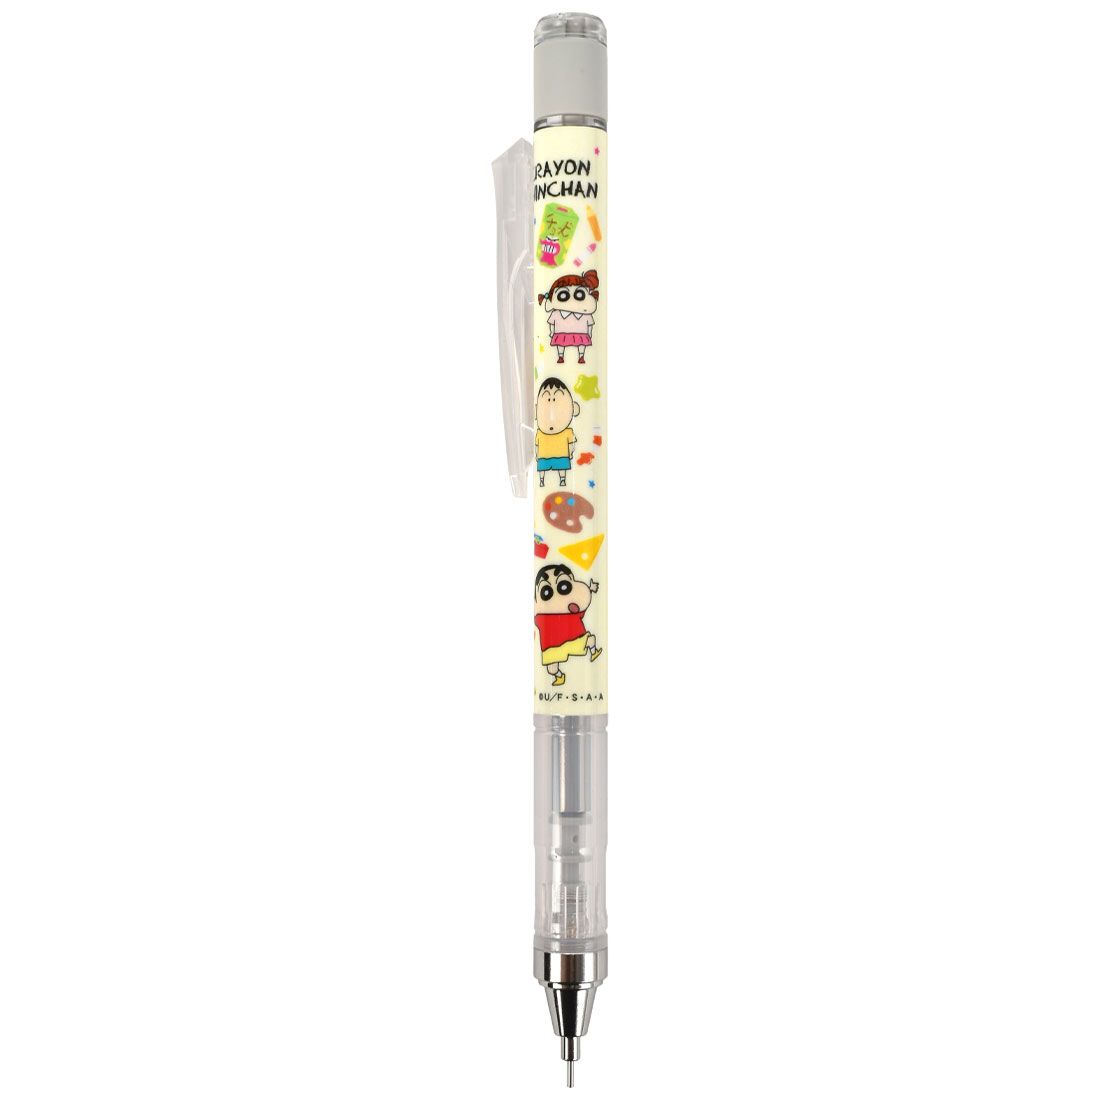 シャーペン モノグラフ 0.5 0.3 クレヨンしんちゃん シャープペン トンボ鉛筆 日本製 MONO graph 筆記用具 通勤 文房具 高校  筆記具 かわいい シャープペンシル